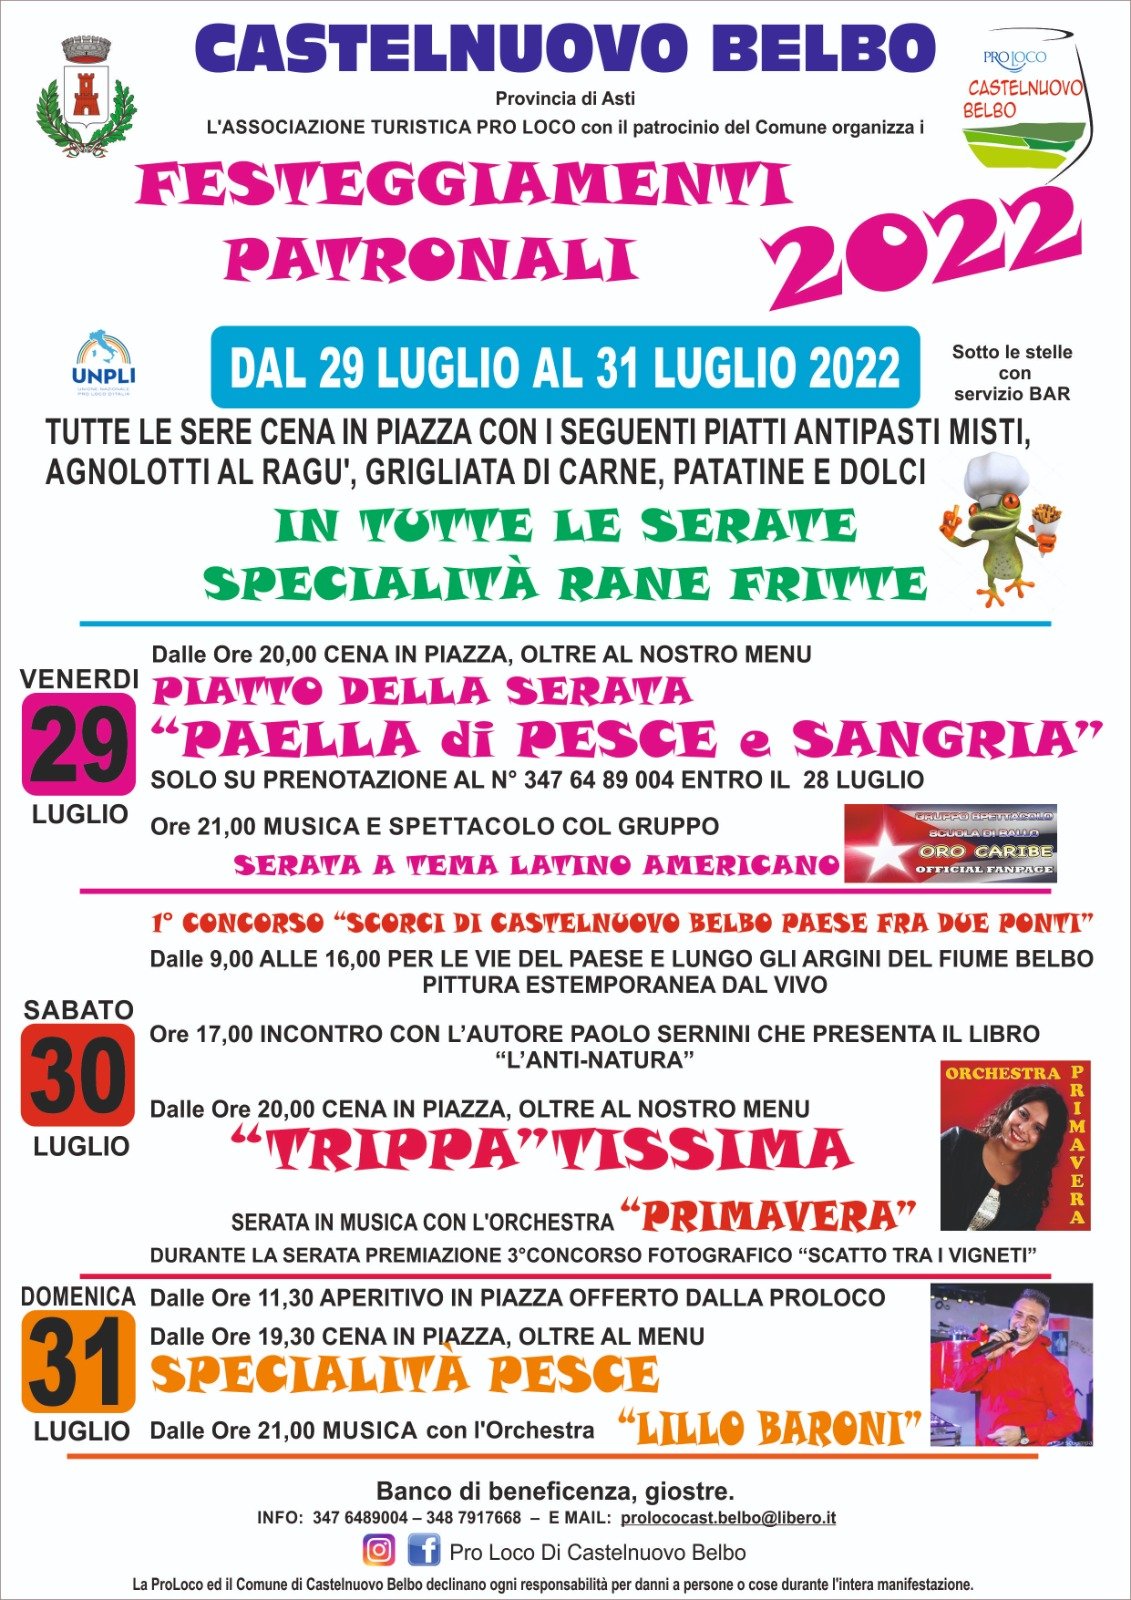 Dal 29 al 31 luglio tre giorni di divertimento con la Festa Patronale di Castelnuovo Belbo